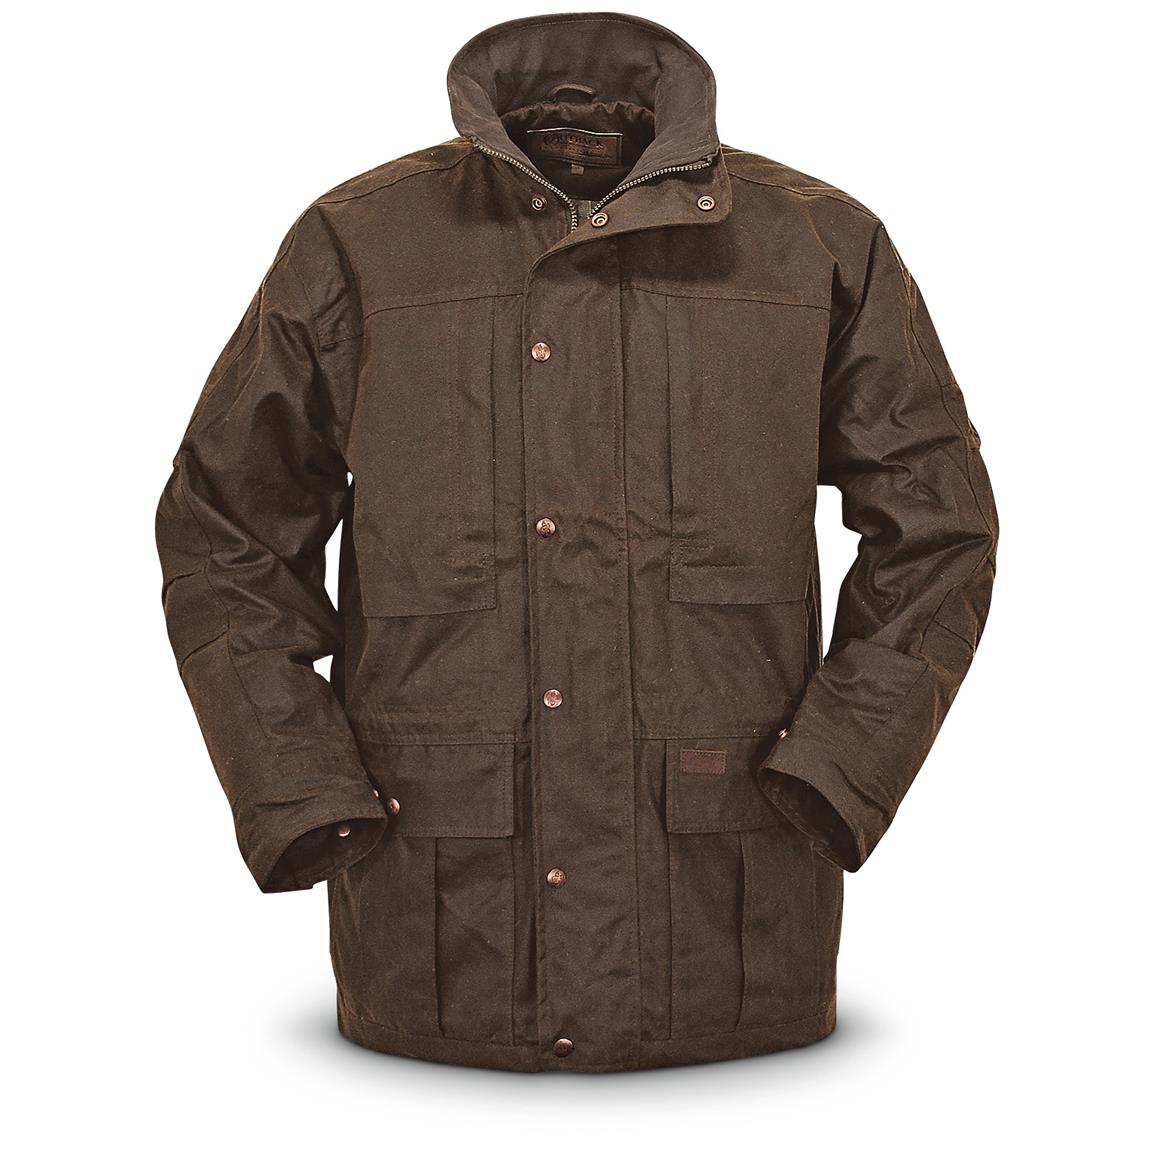 Outback Trading Deer Hunter Waterproof Oilskin Jacket - 648211, Jackets, Coats & Rain Gear at 